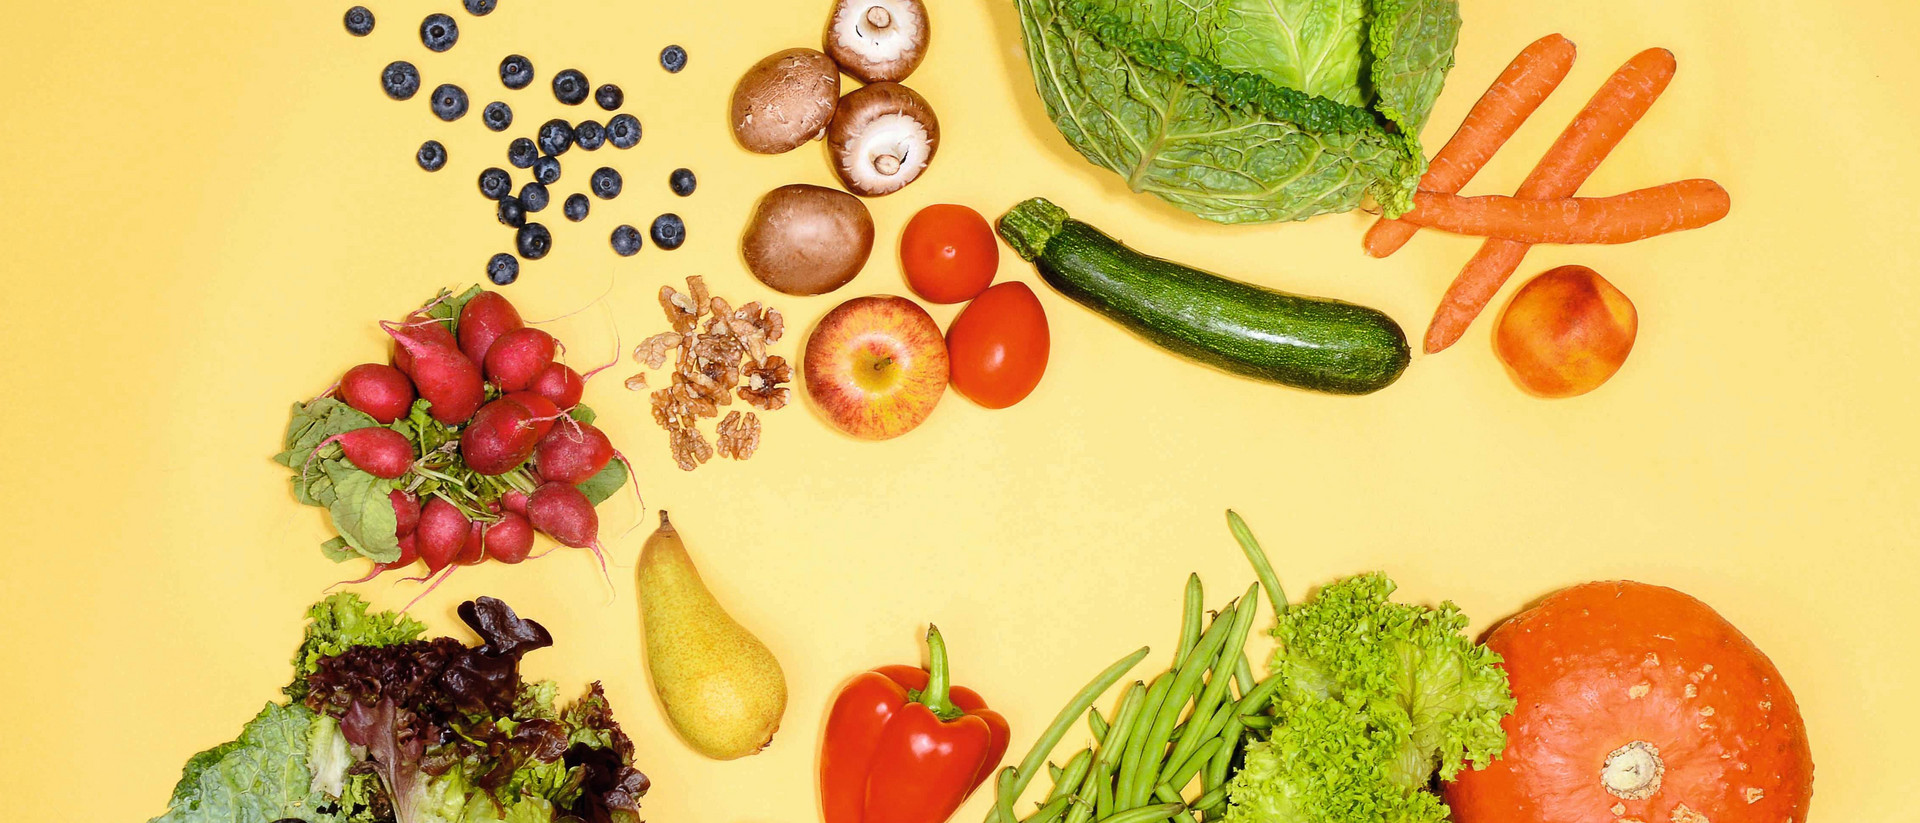 Gemüse und Obst unterschiedlicher Art liegen lose verstreut auf einem gelben Untergrund.